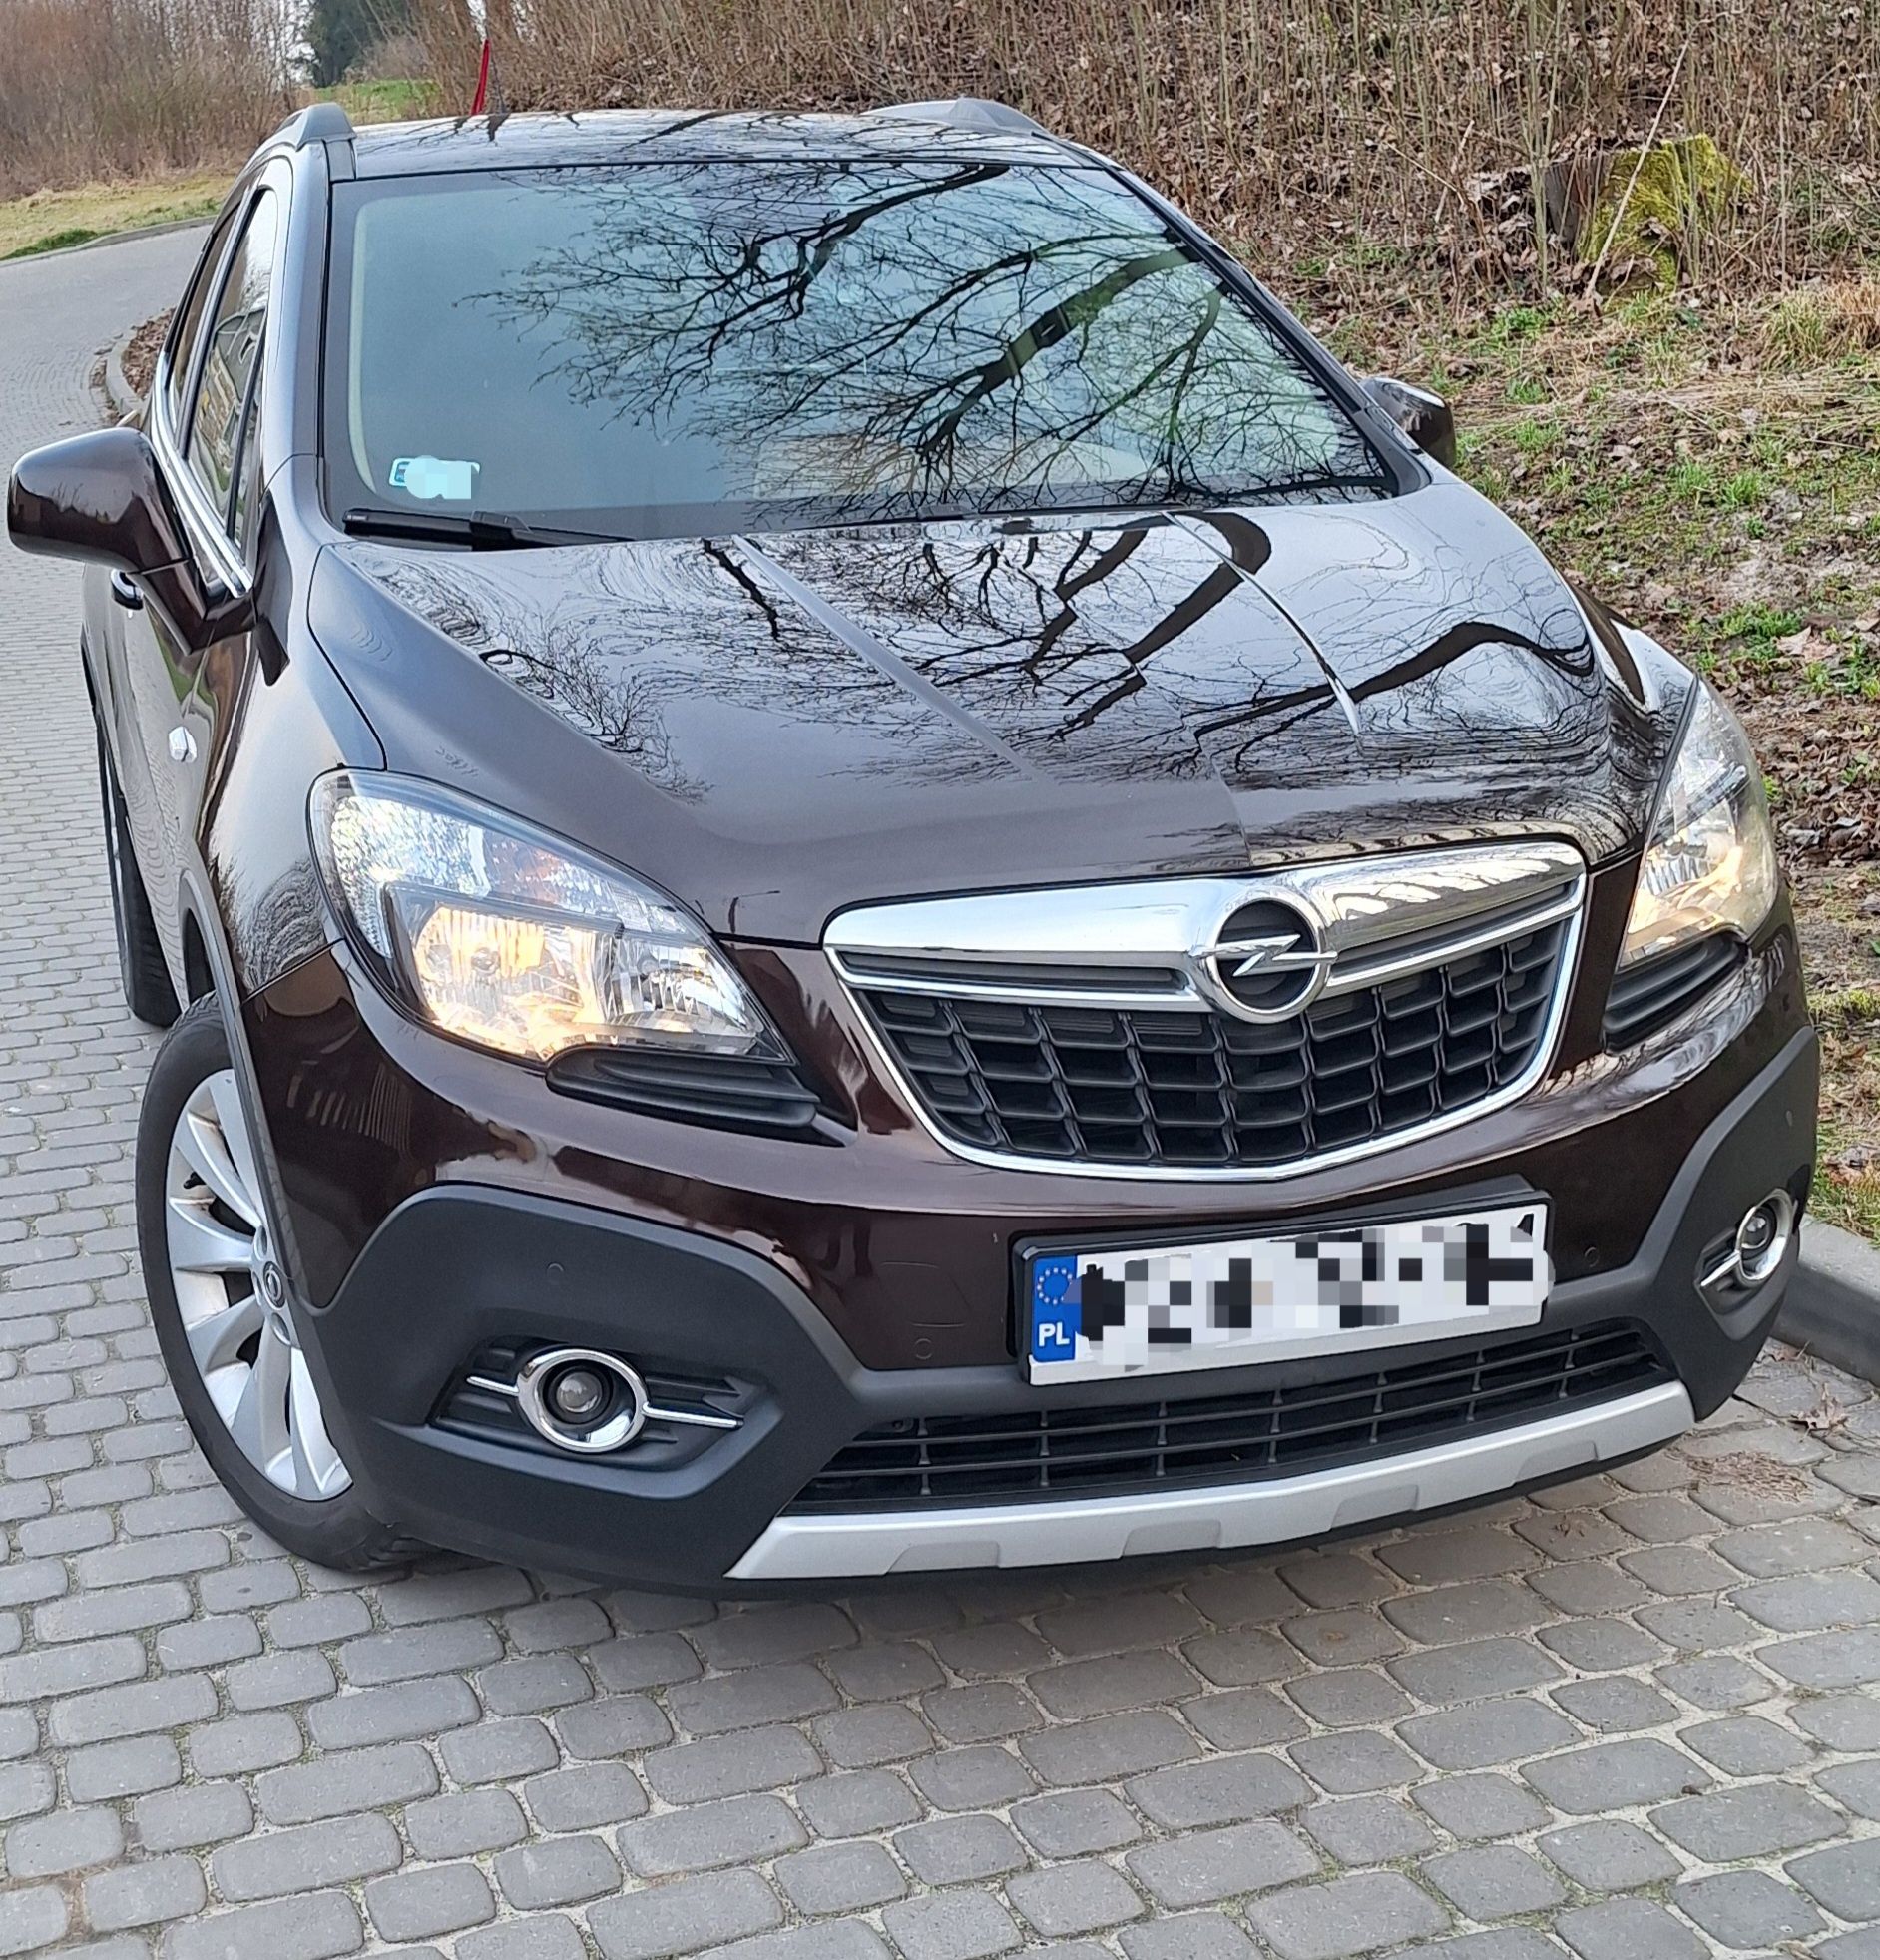 Opel  MOKKA  1.4